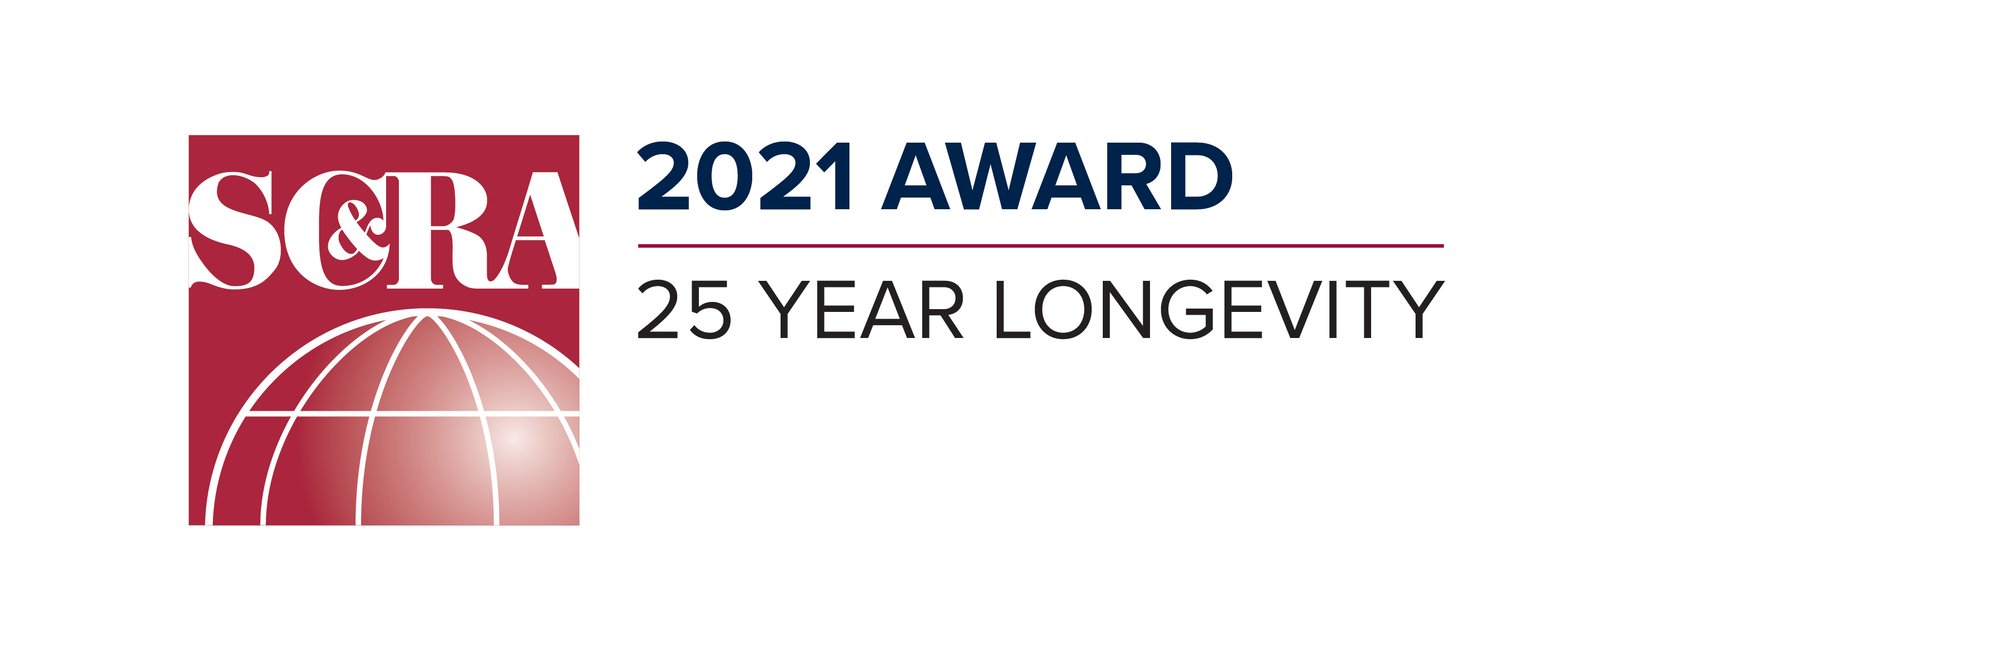 2021 Award - 25 Year Longevity